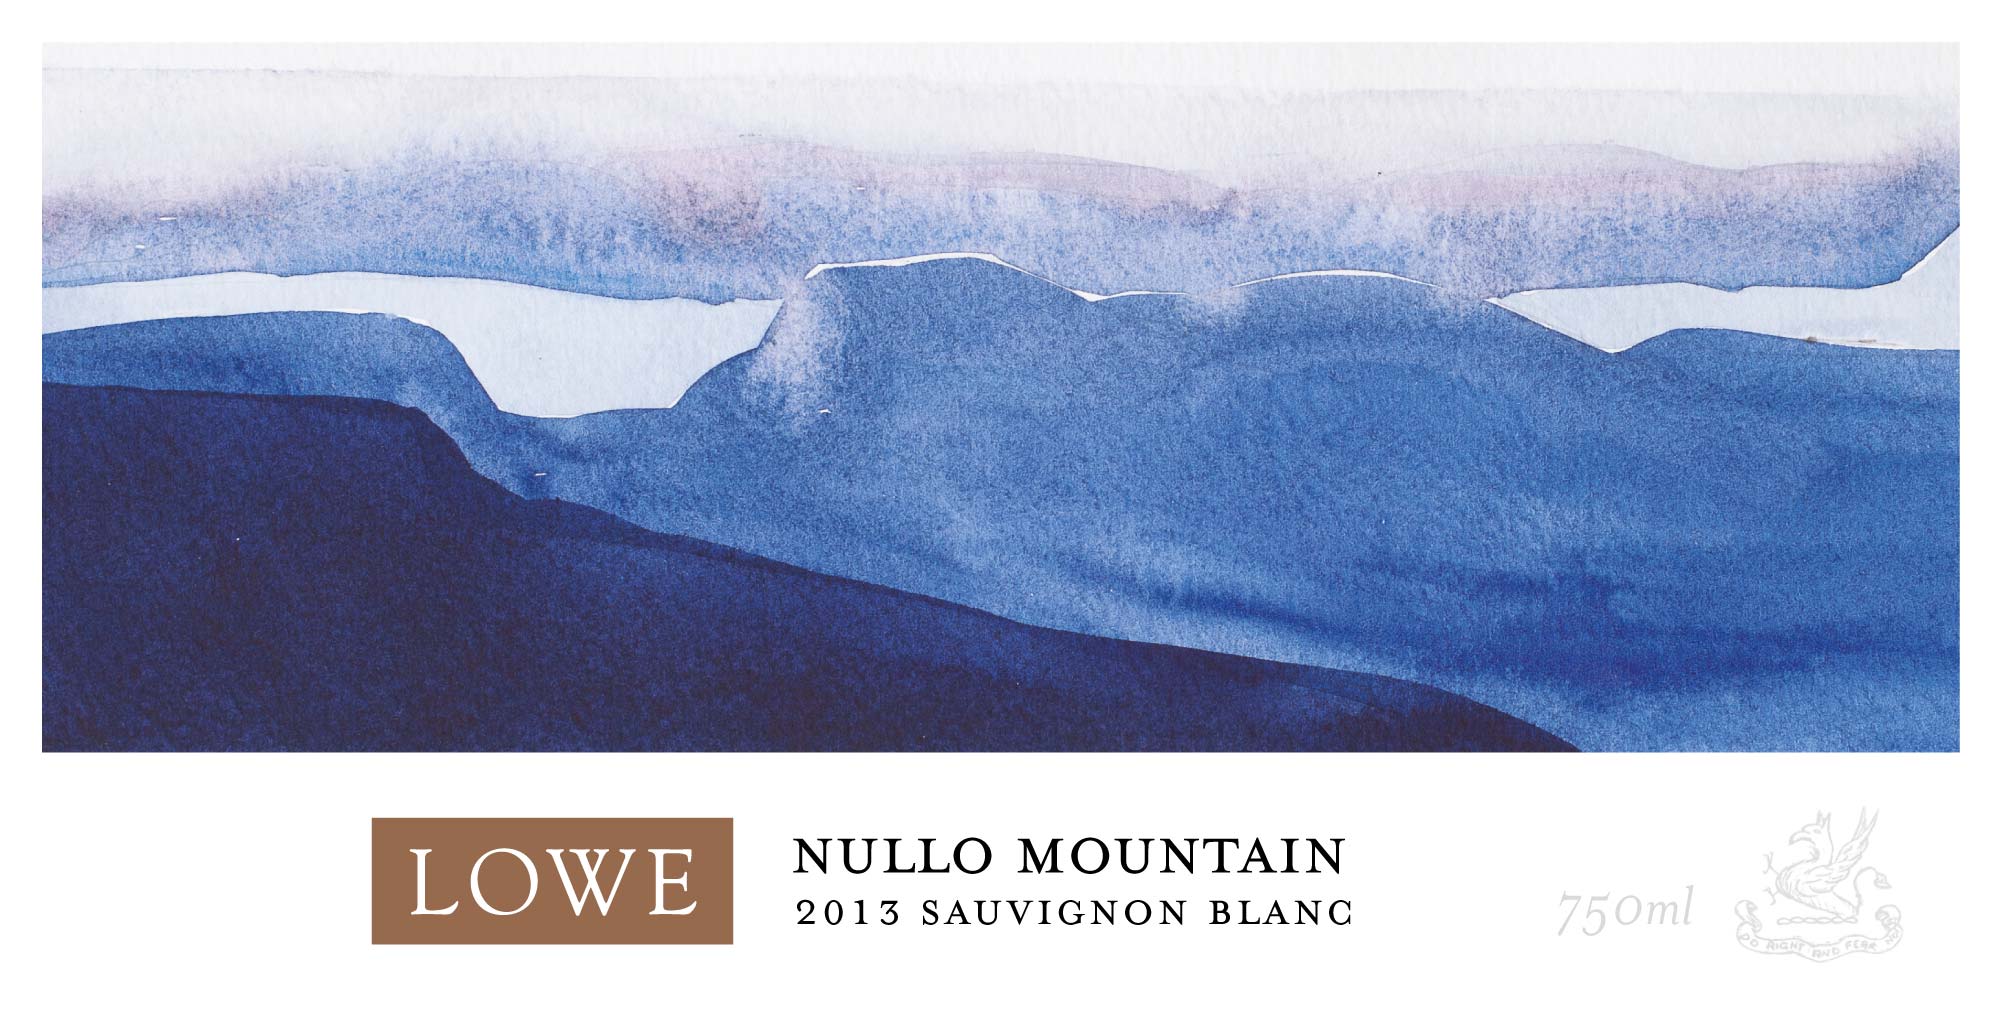 Lowe Nullo Mountain Wine Label Design